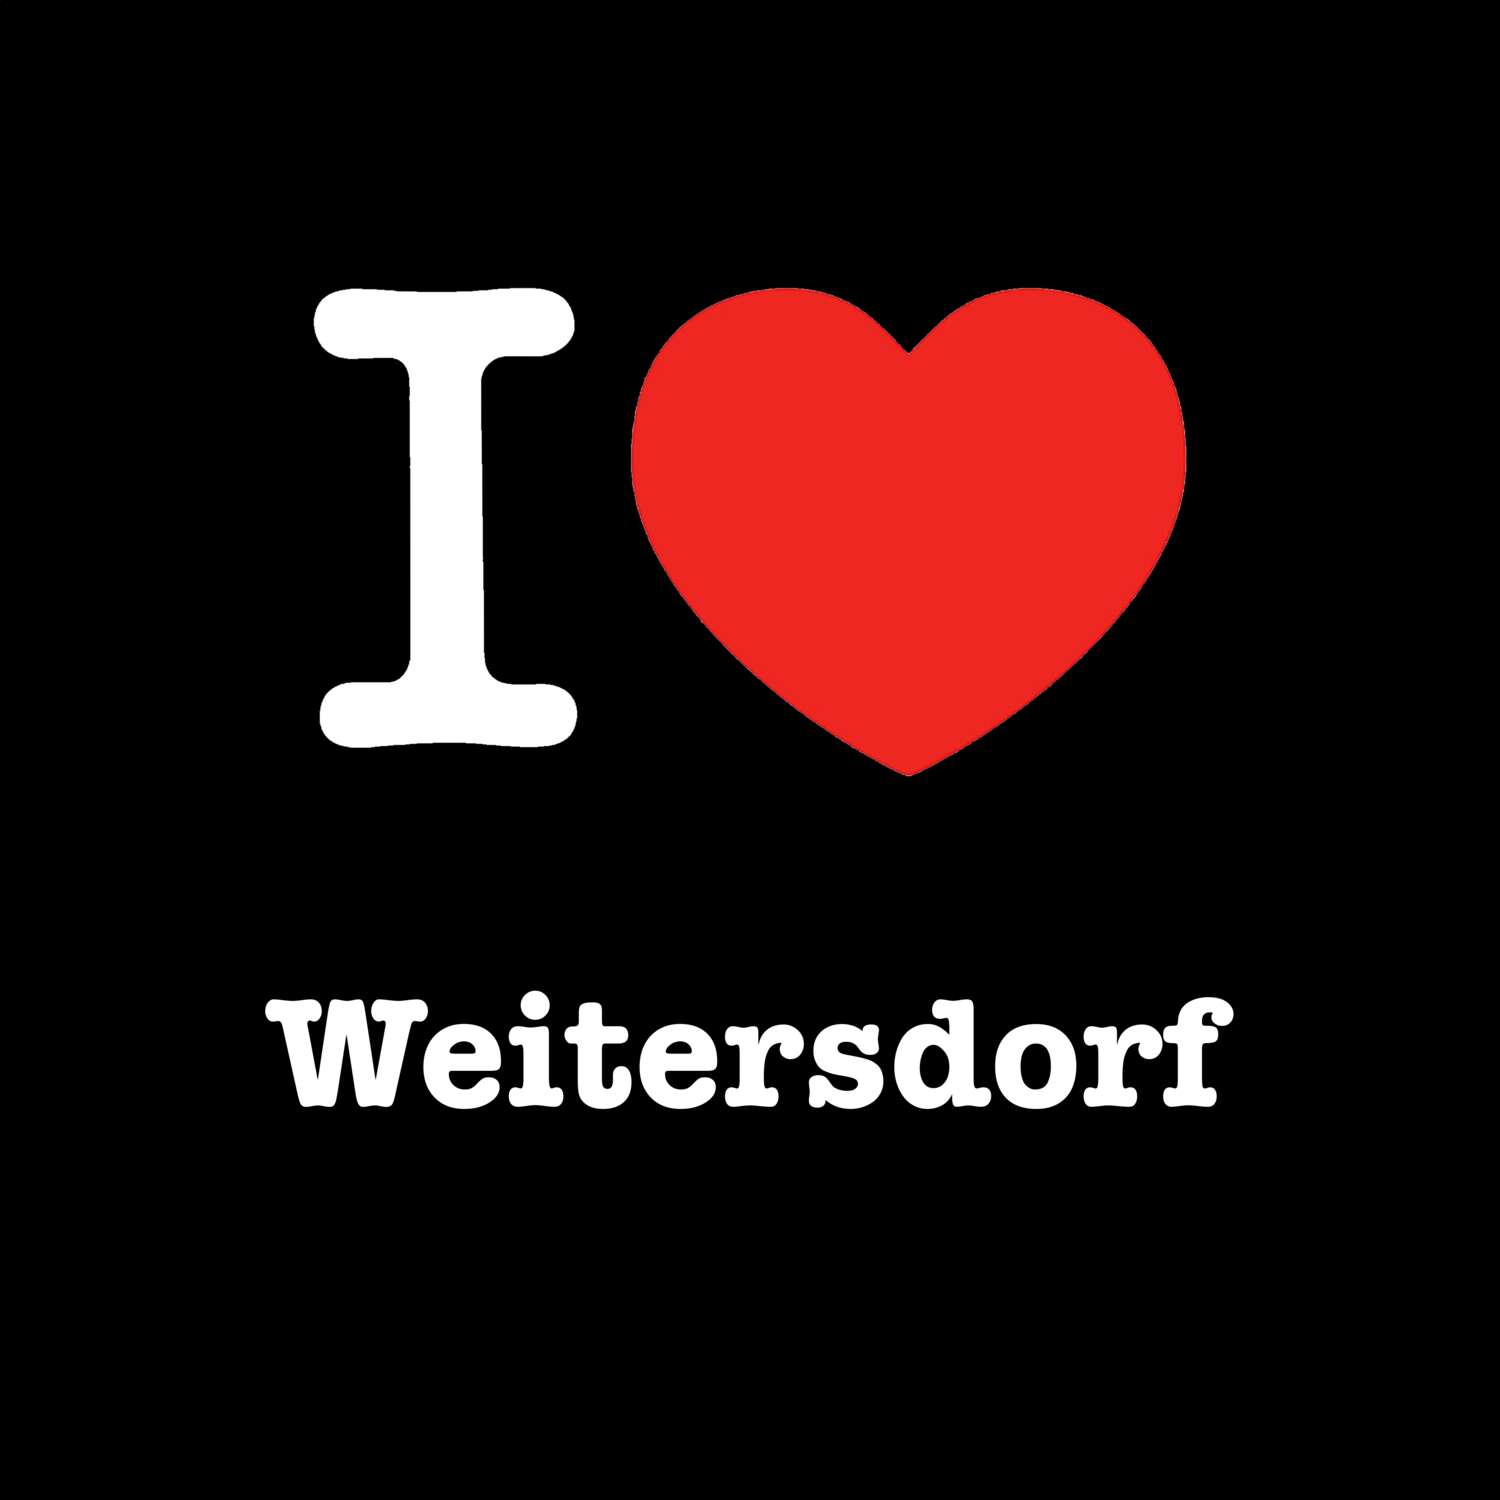 Weitersdorf T-Shirt »I love«